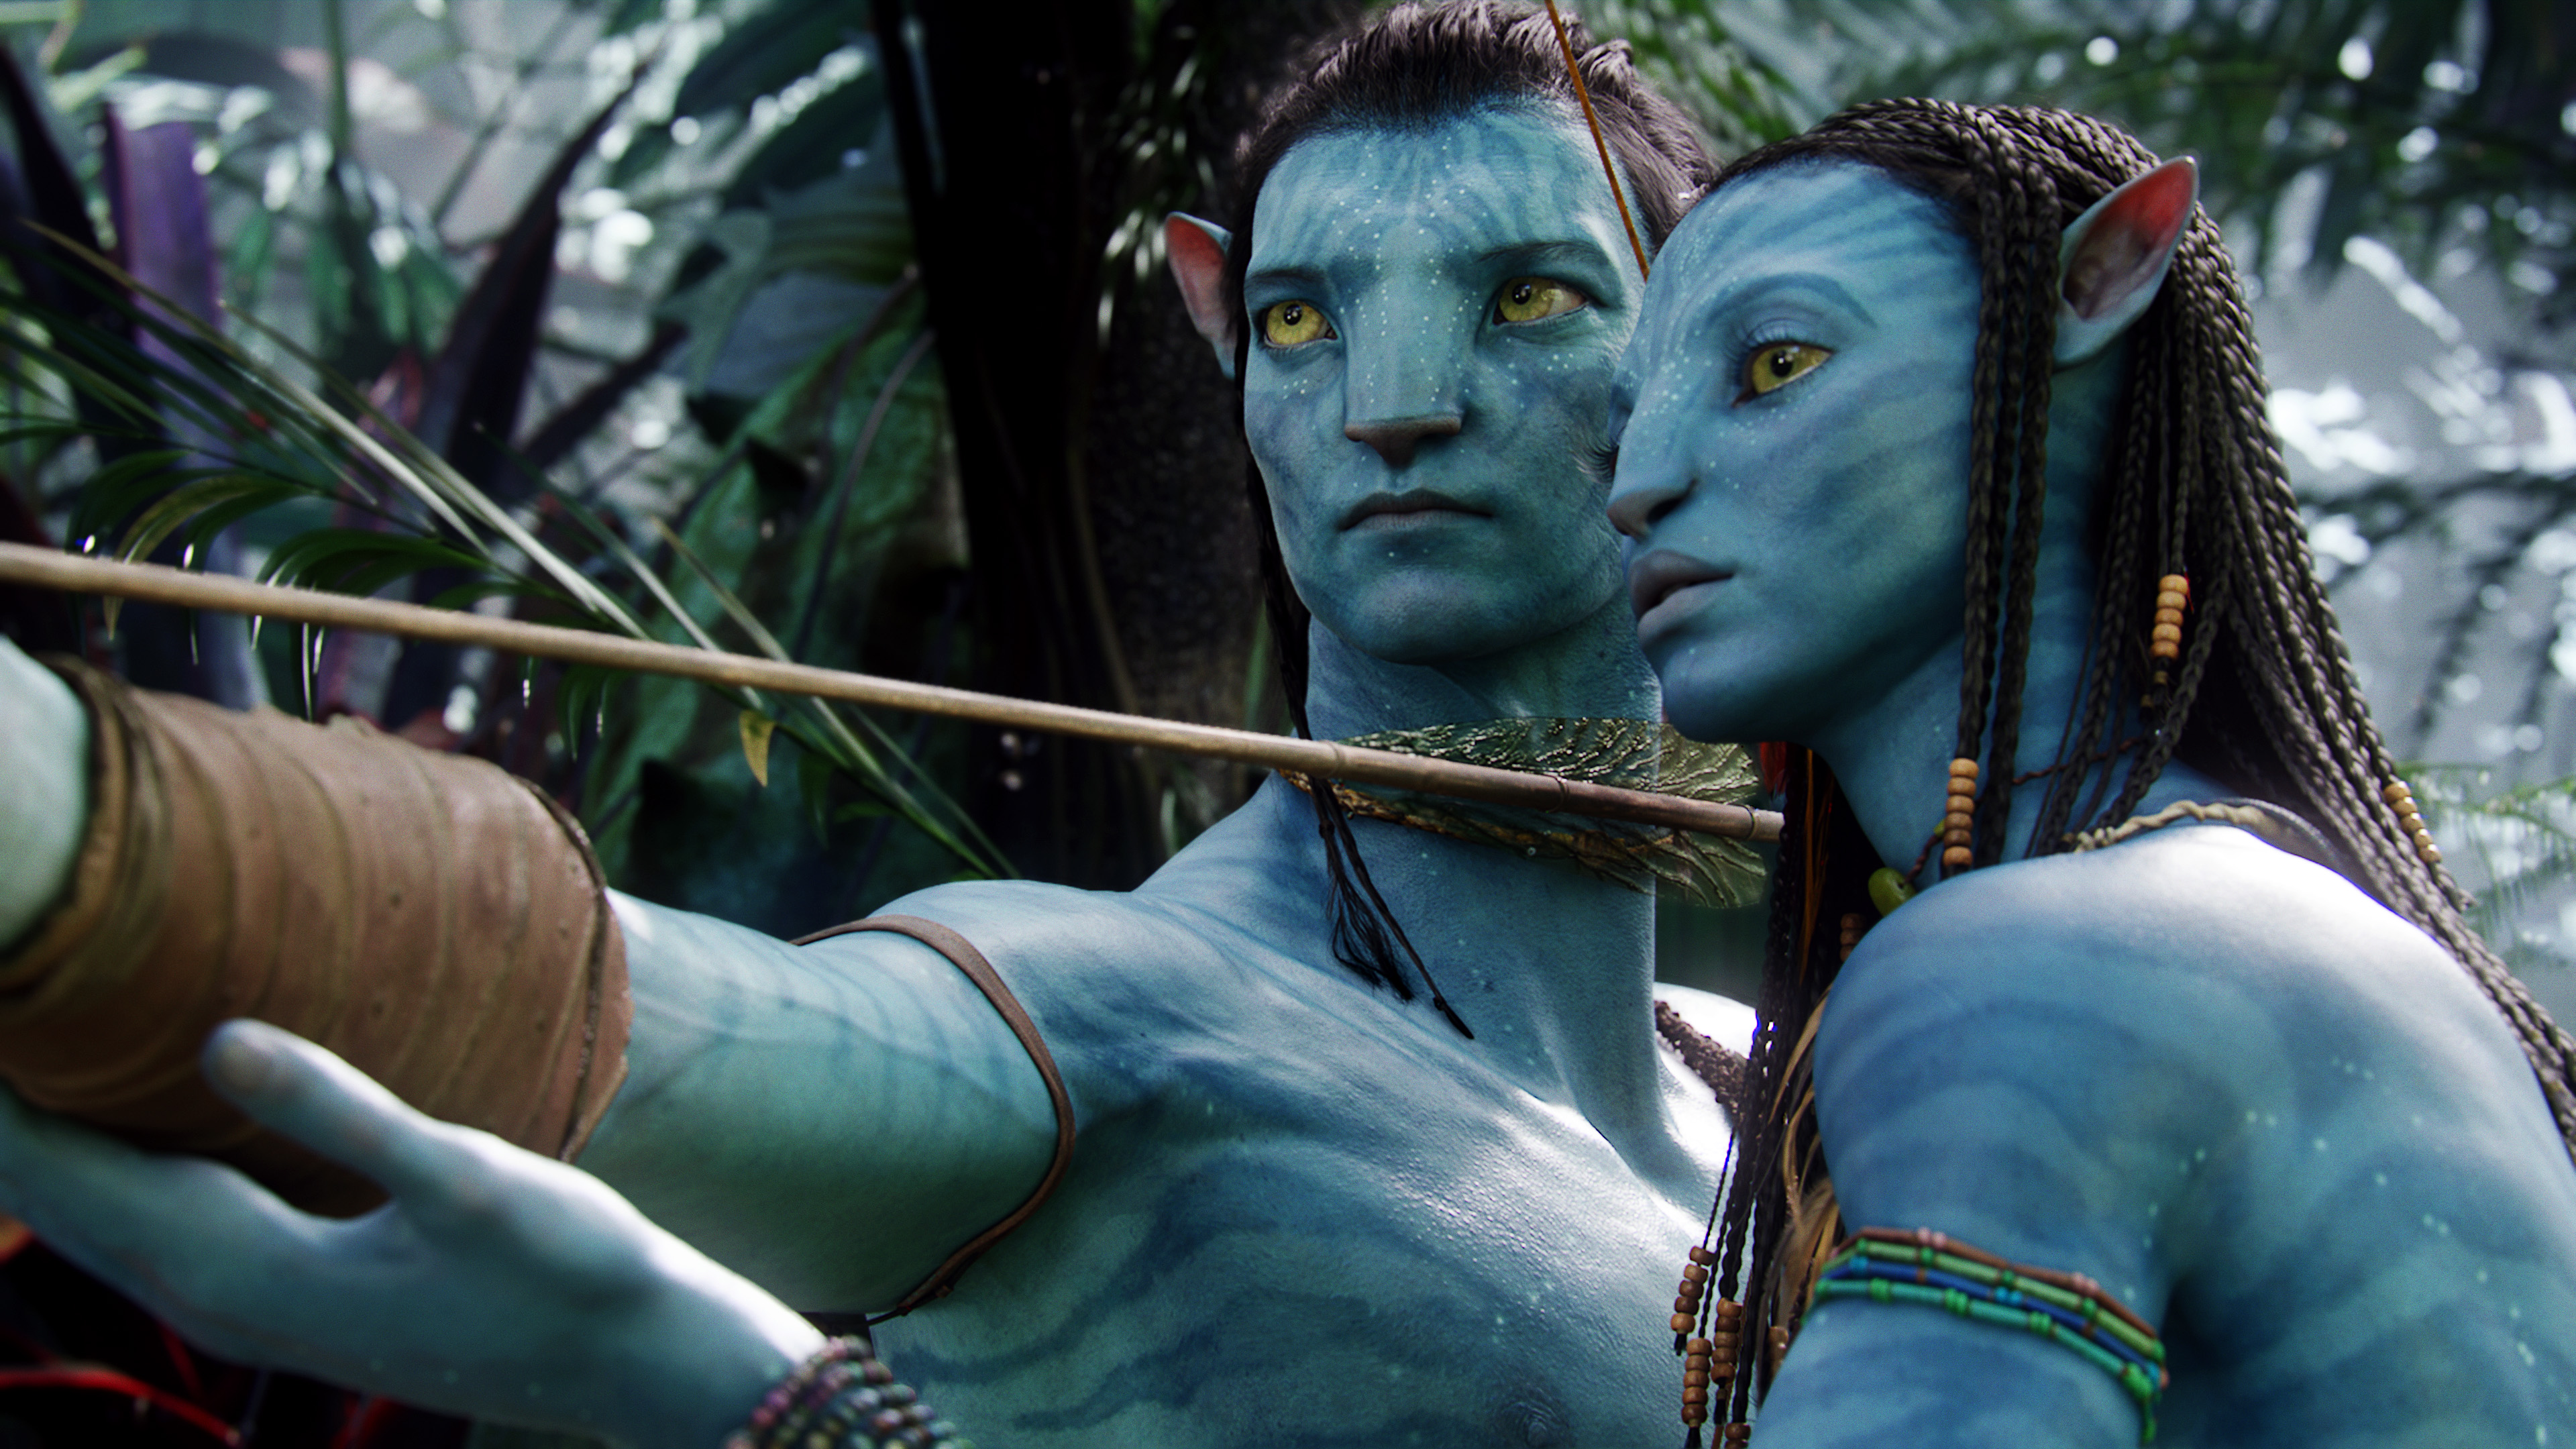 Cuối cùng, siêu phẩm Avatar gia đình sẽ mang lại cho khán giả một trải nghiệm mới hoàn toàn. Phần tiếp theo của bộ phim lừng danh sẽ đưa người xem đến với những cuộc phiêu lưu mới và đầy kích thích. Hãy cùng đón xem và tận hưởng nhé.